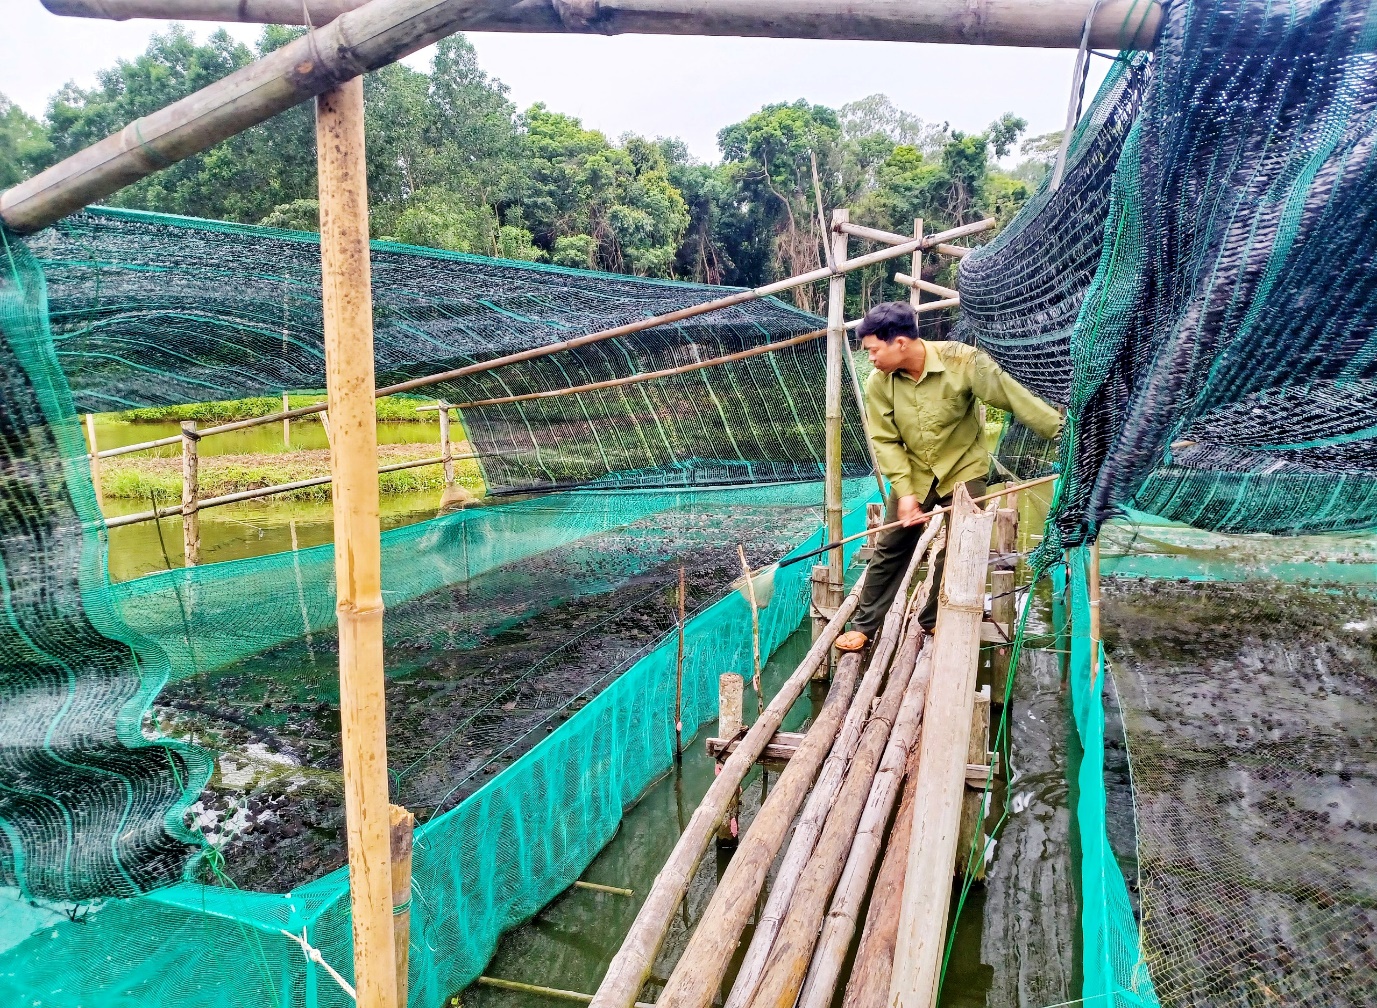 Nuôi ếch kết hợp nuôi cá rô, một nông dân Quảng Trị tiết kiệm chi phí mà lợi nhuận lại tốt hơn hẳn - Ảnh 2.